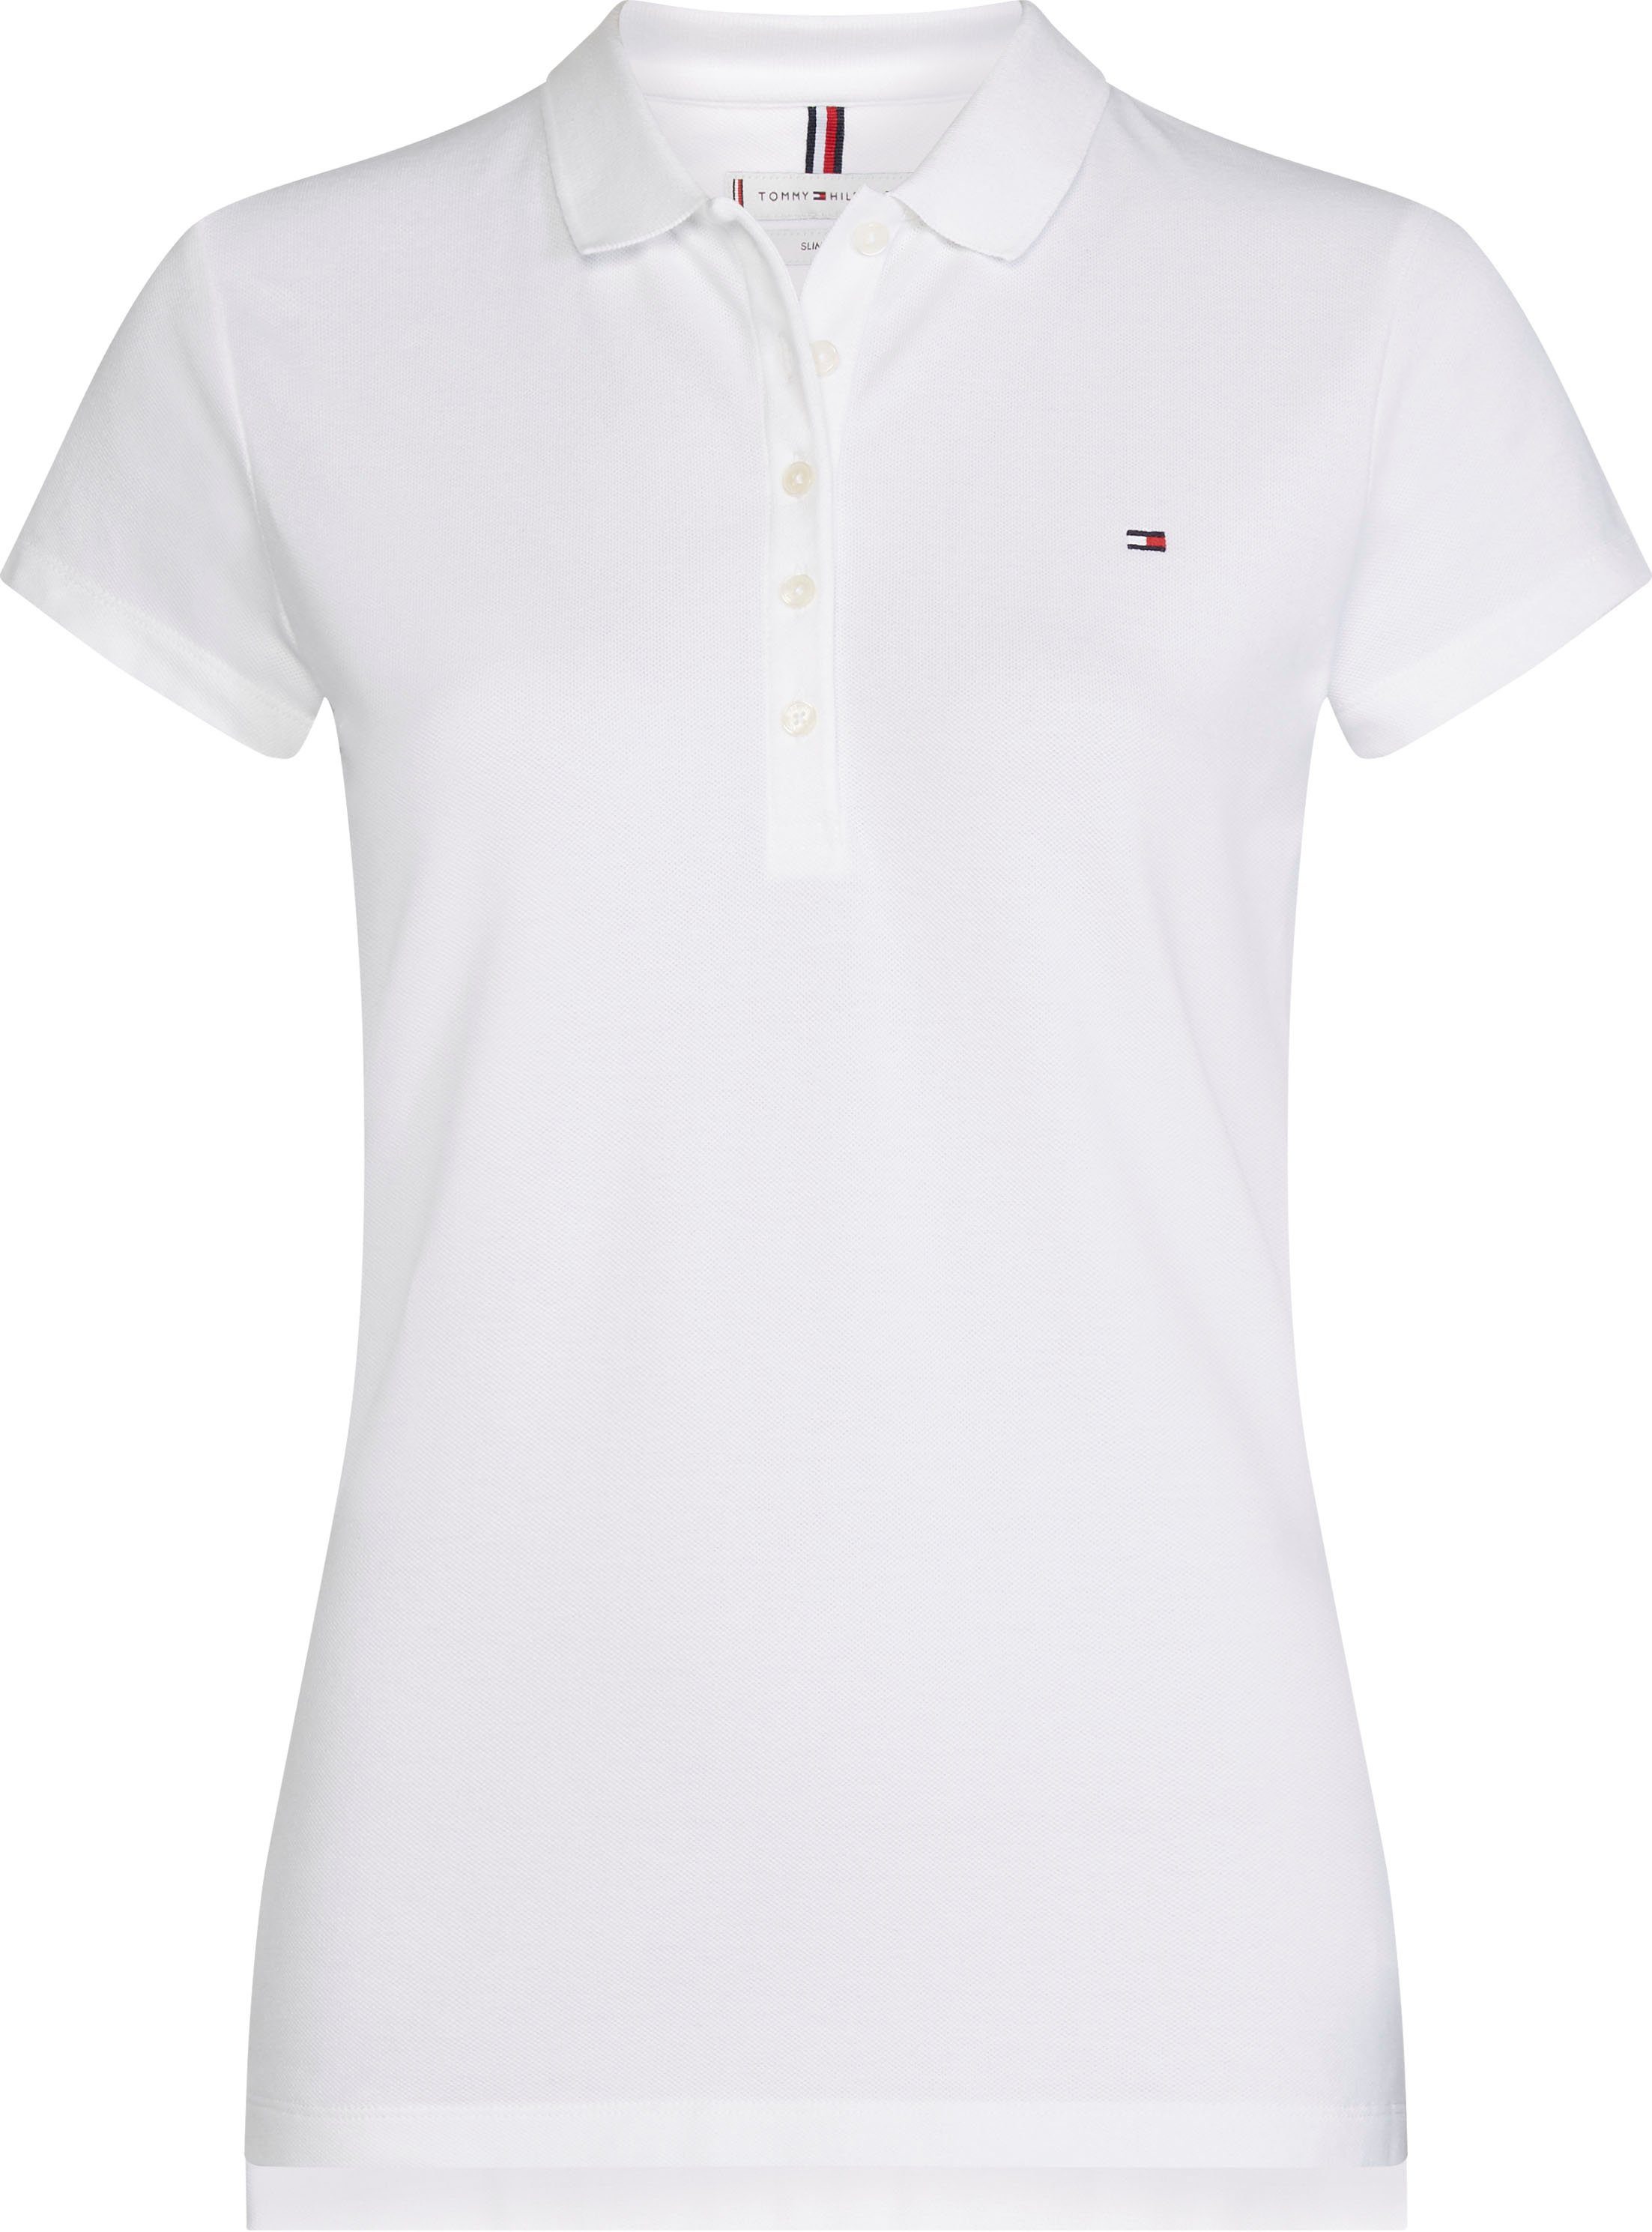 Tommy Hilfiger Basic-Shirt Damen online kaufen | OTTO